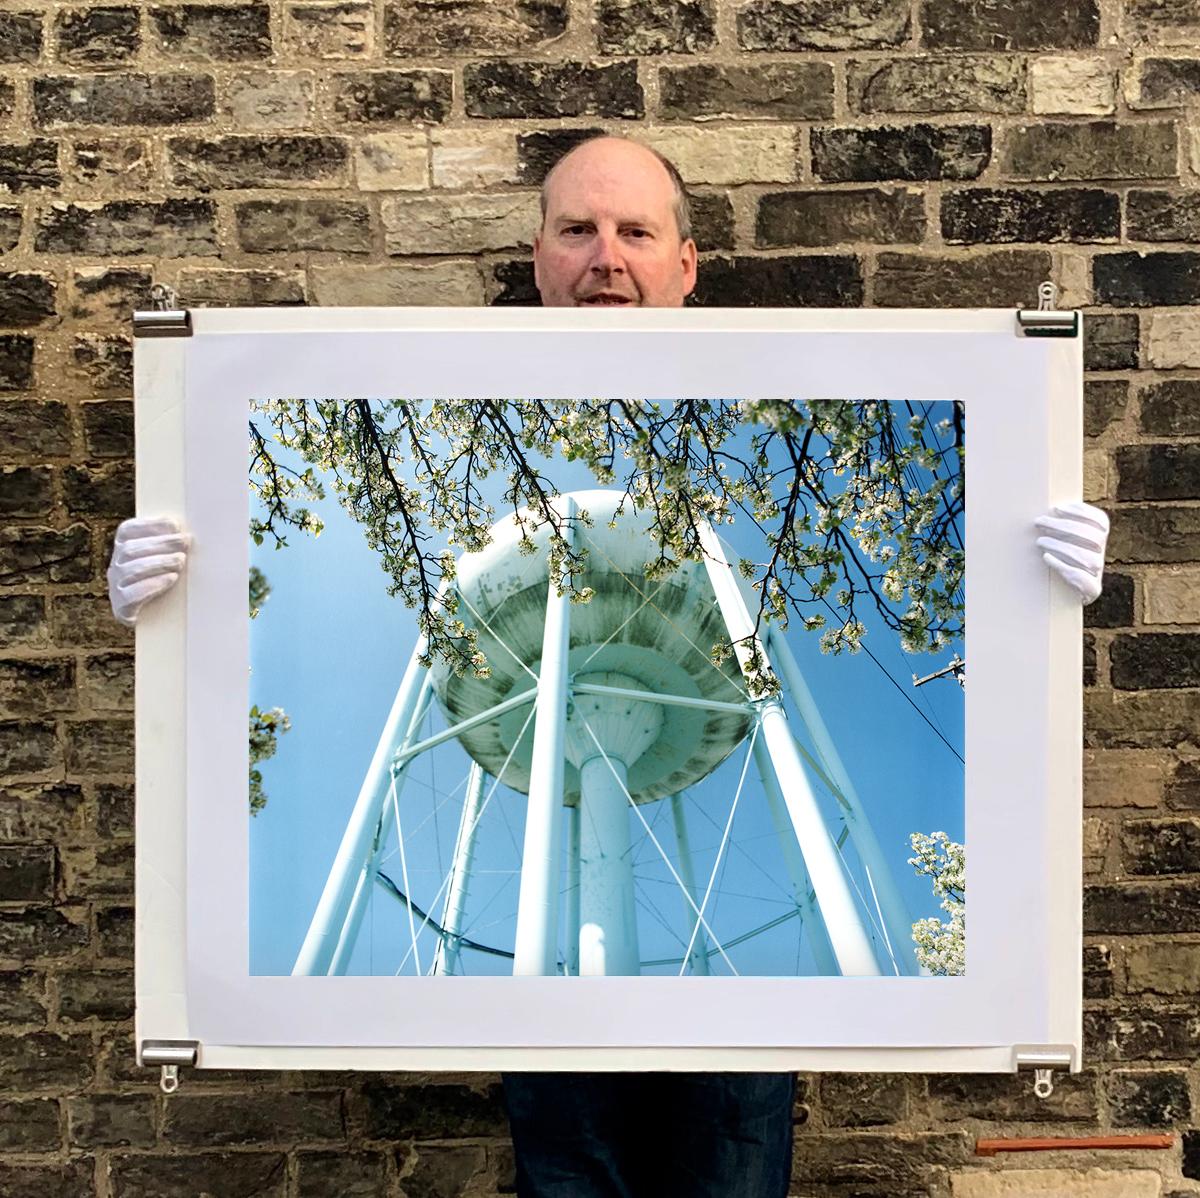 Wasserturm in Blüte, Wildholz, New Jersey – Struktur, Farbfotografie (Zeitgenössisch), Photograph, von Richard Heeps